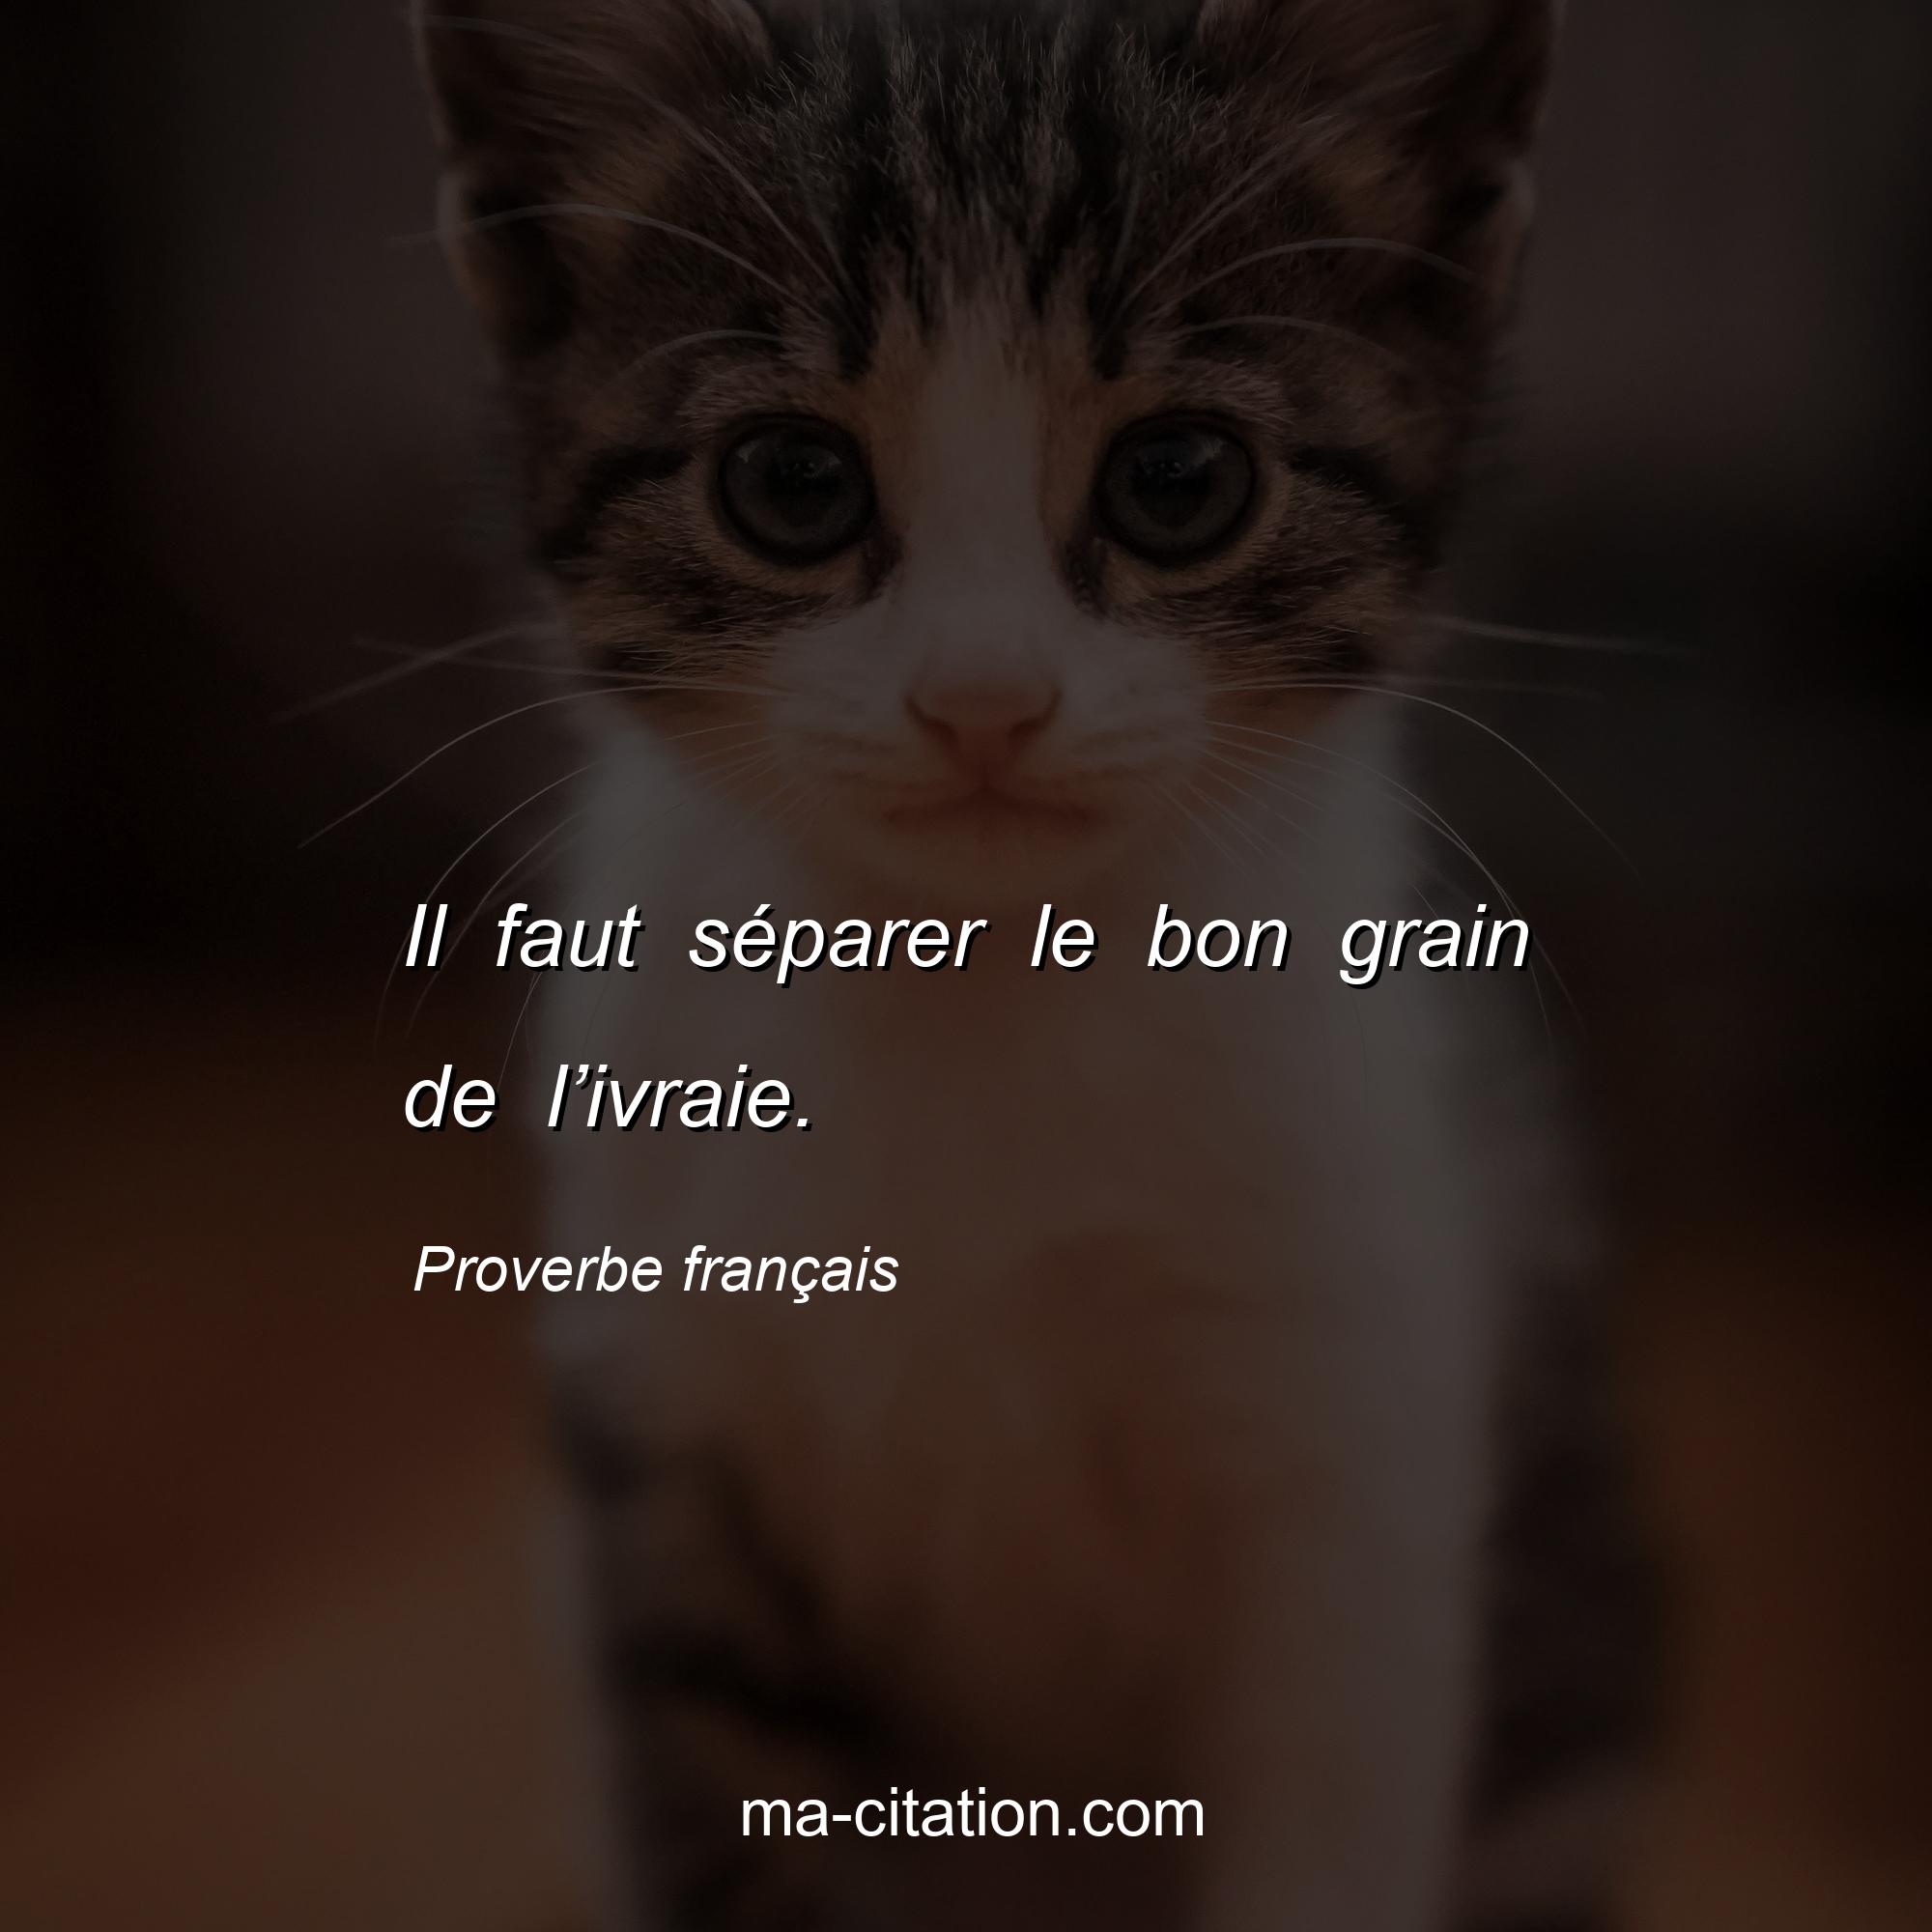 Proverbe français : Il faut séparer le bon grain de l’ivraie.